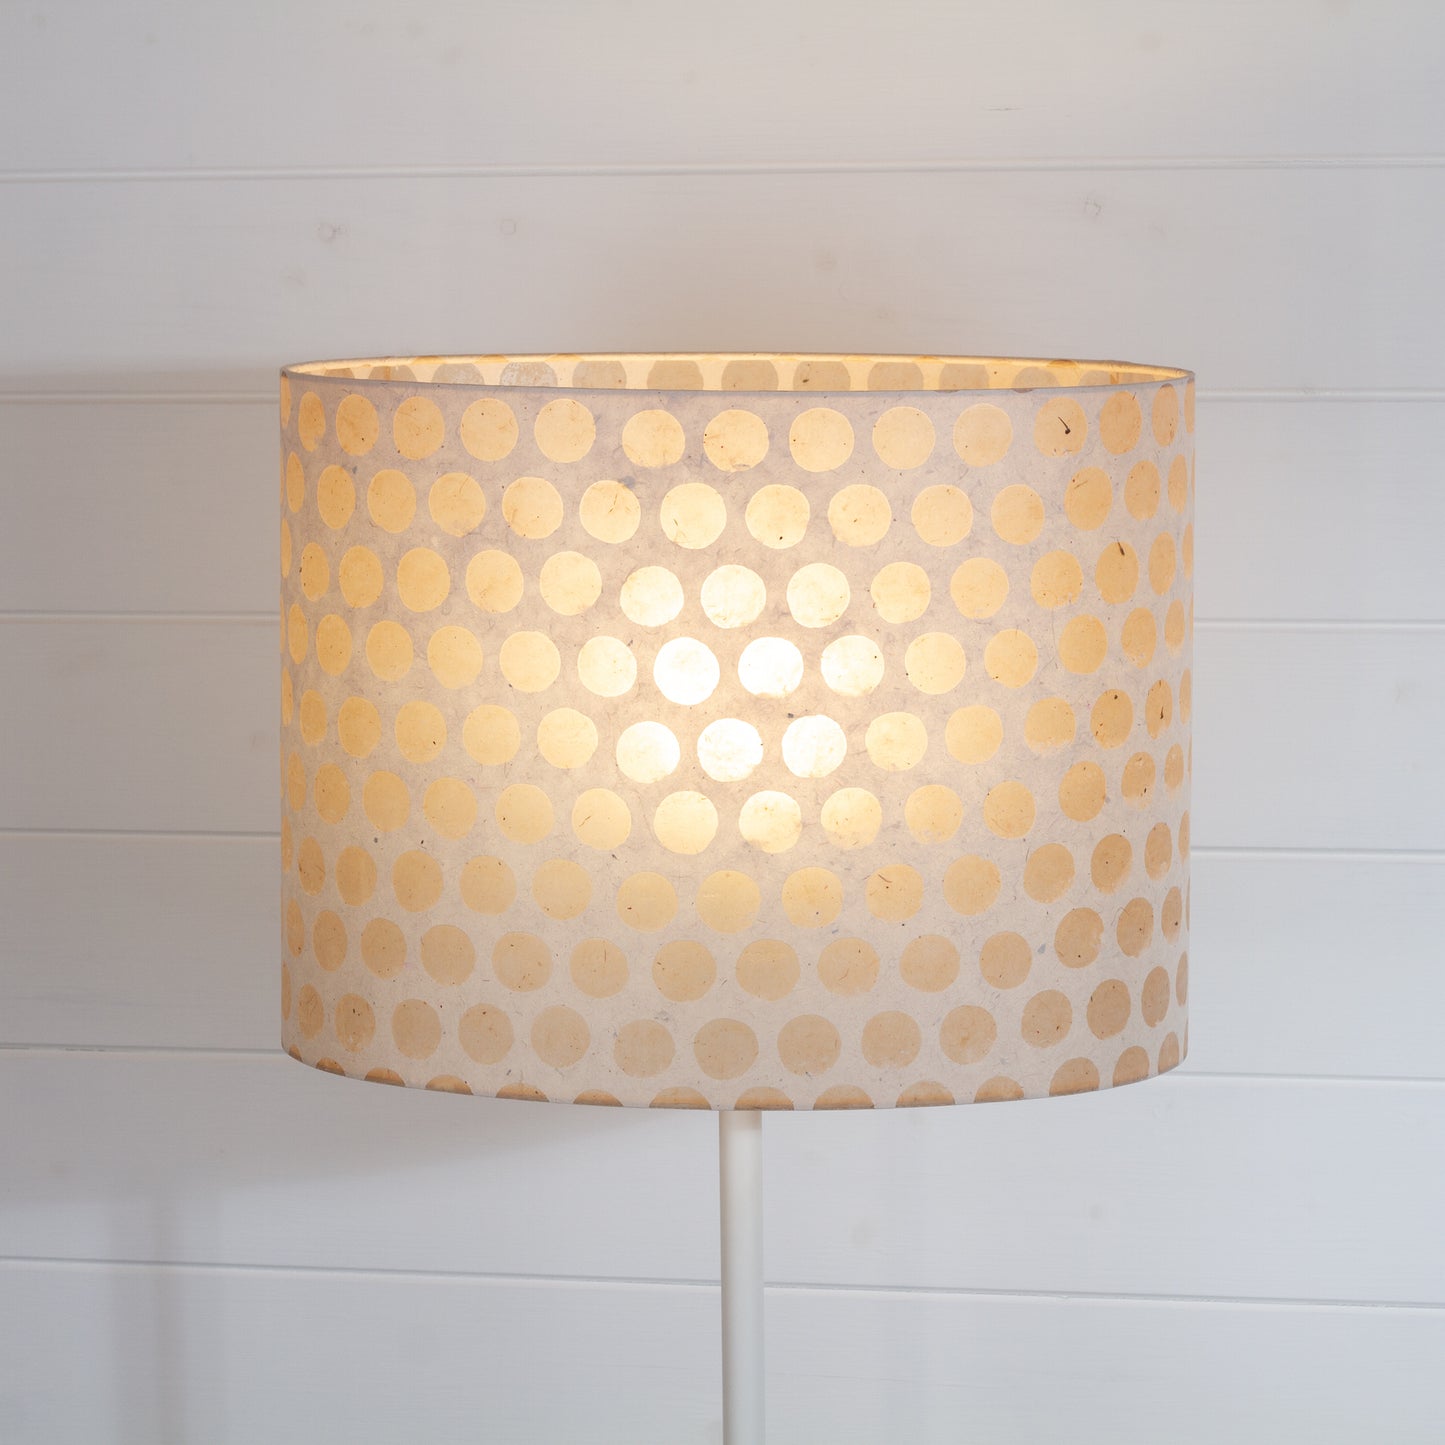 Oval Lamp Shade - P85 ~ Batik Dots on Natural, 40cm(w) x 30cm(h) x 30cm(d)